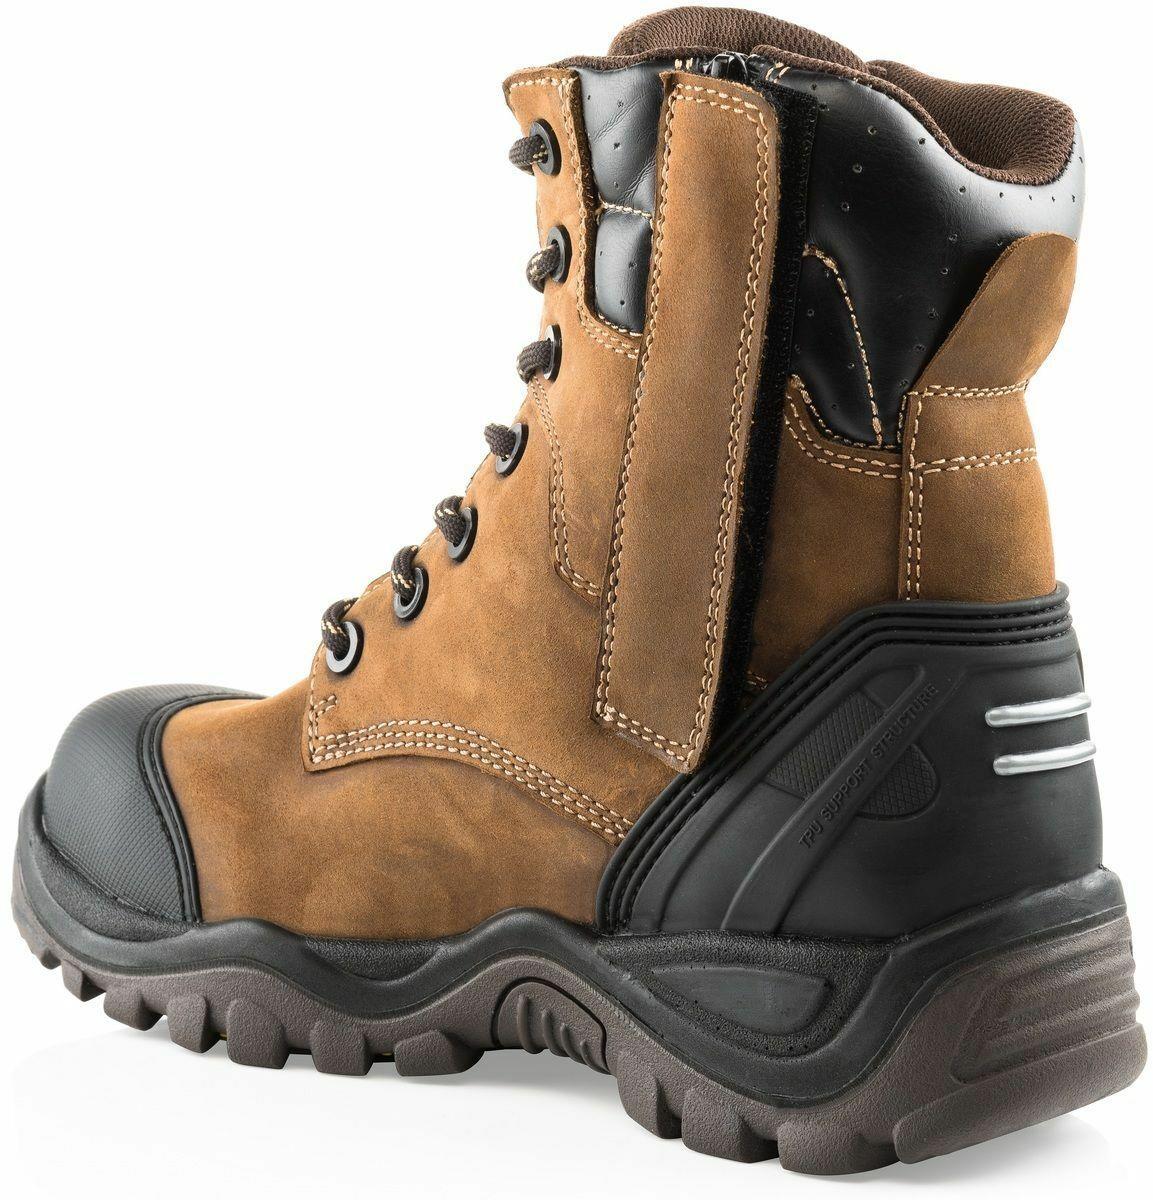 Buckbootz S3 brown leather waterproof steel toe/midsole side-zip safety work boot #BSH008